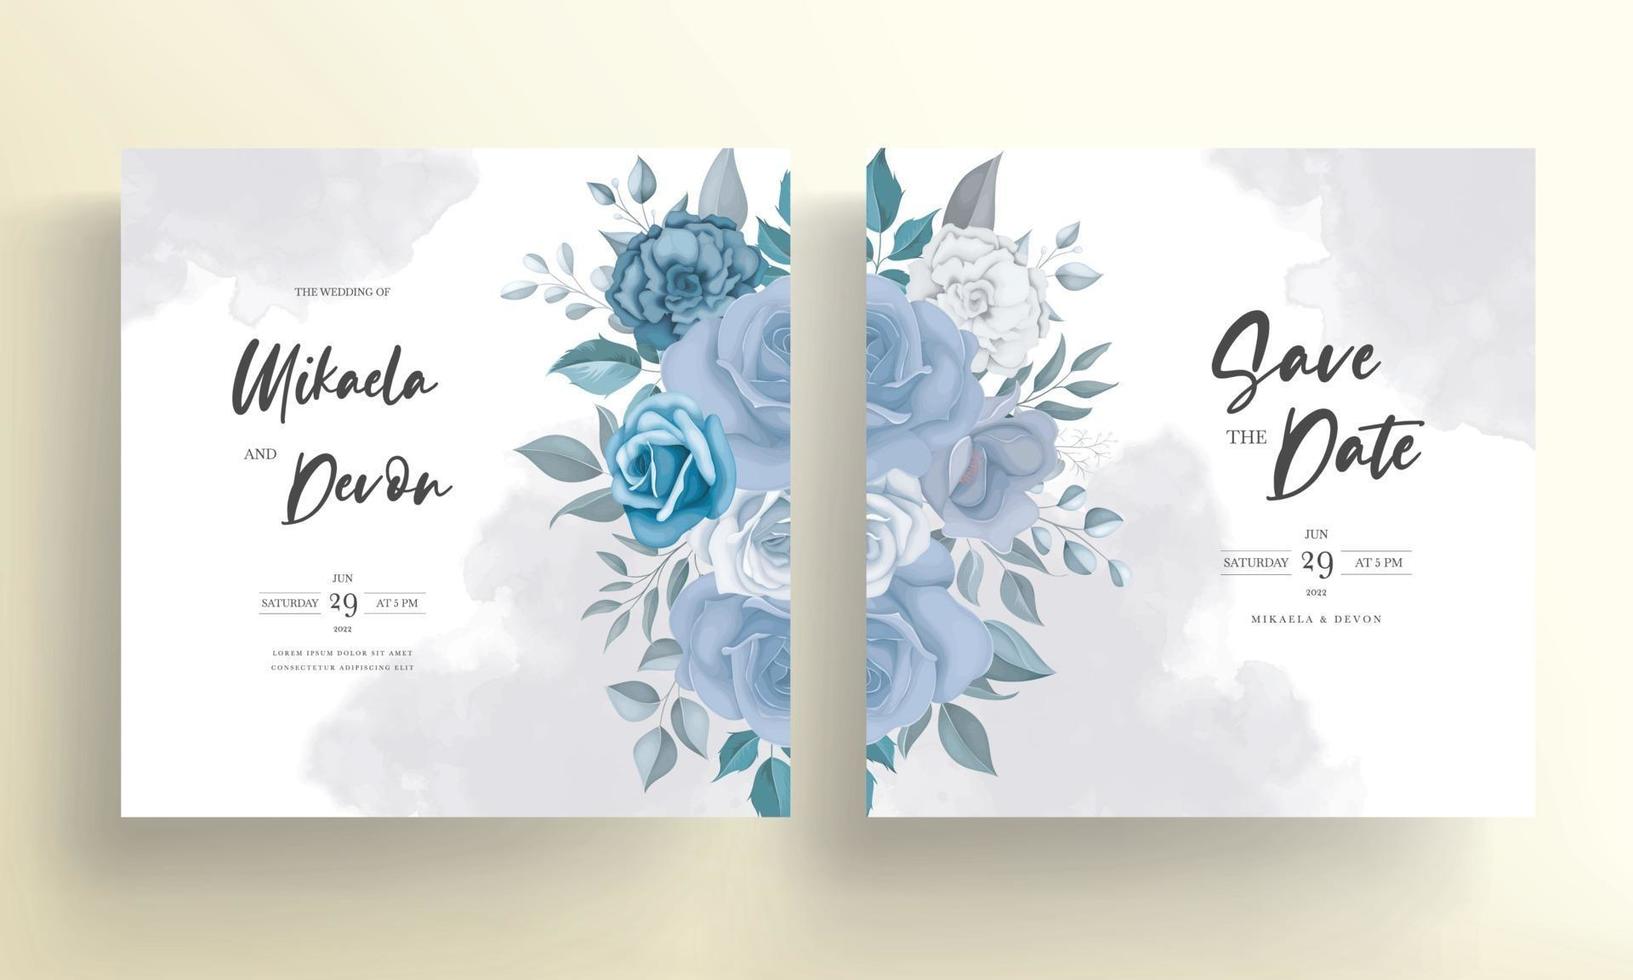 cartão de convite de casamento moderno com flores azuis vetor